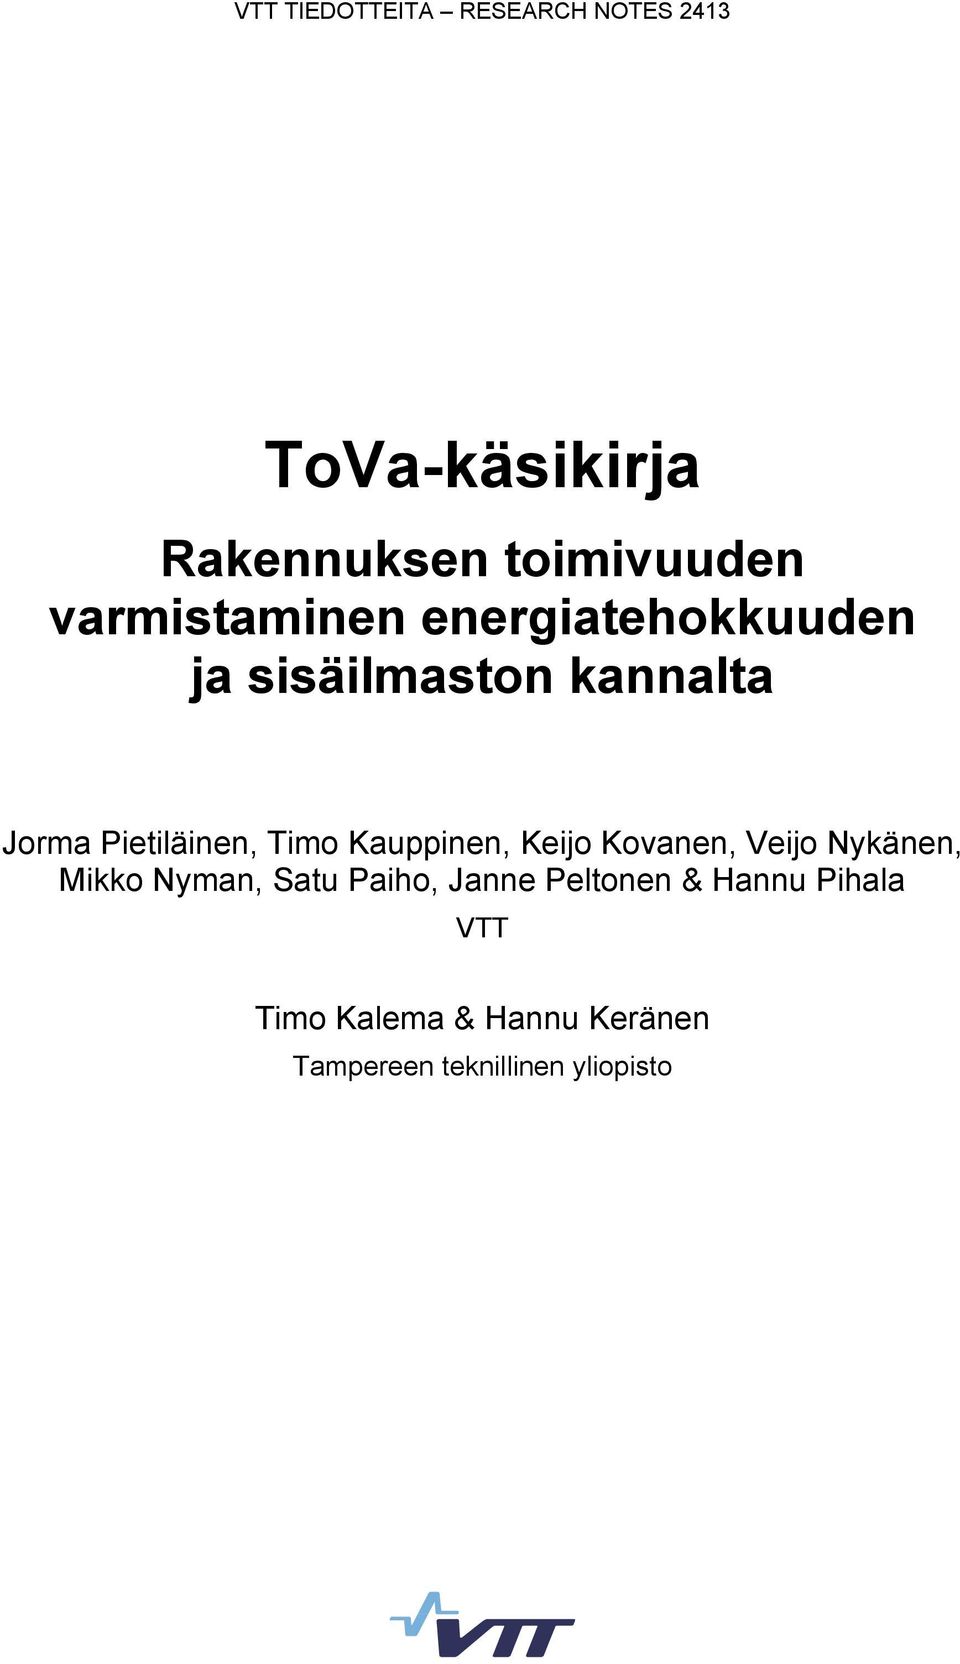 Timo Kauppinen, Keijo Kovanen, Veijo Nykänen, Mikko Nyman, Satu Paiho, Janne